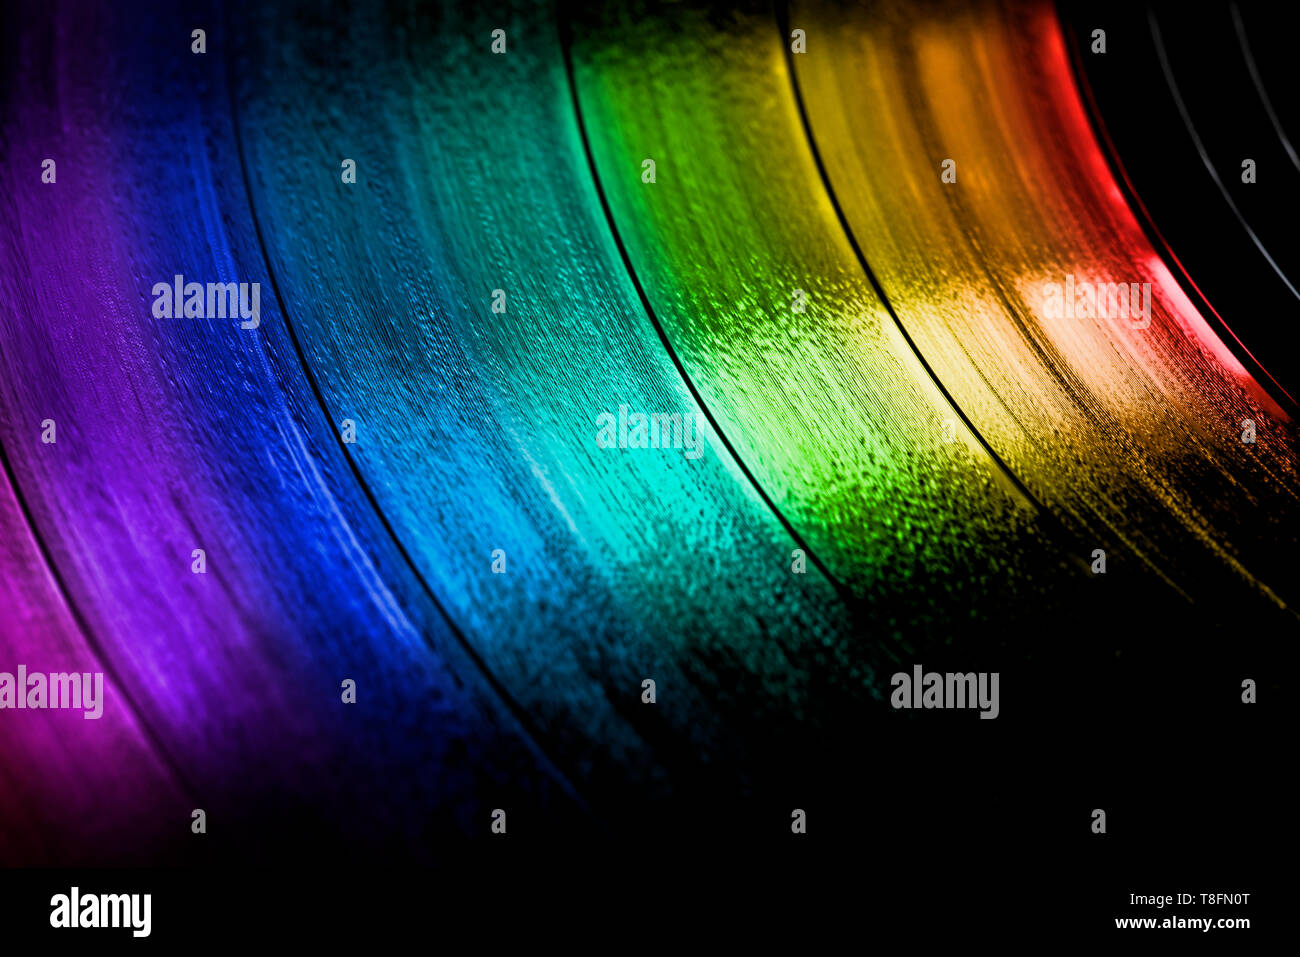 Oberfläche von einer alten Schallplatte in Regenbogenfarben. Makroaufnahme, geringe Tiefenschärfe. SDF. Stockfoto